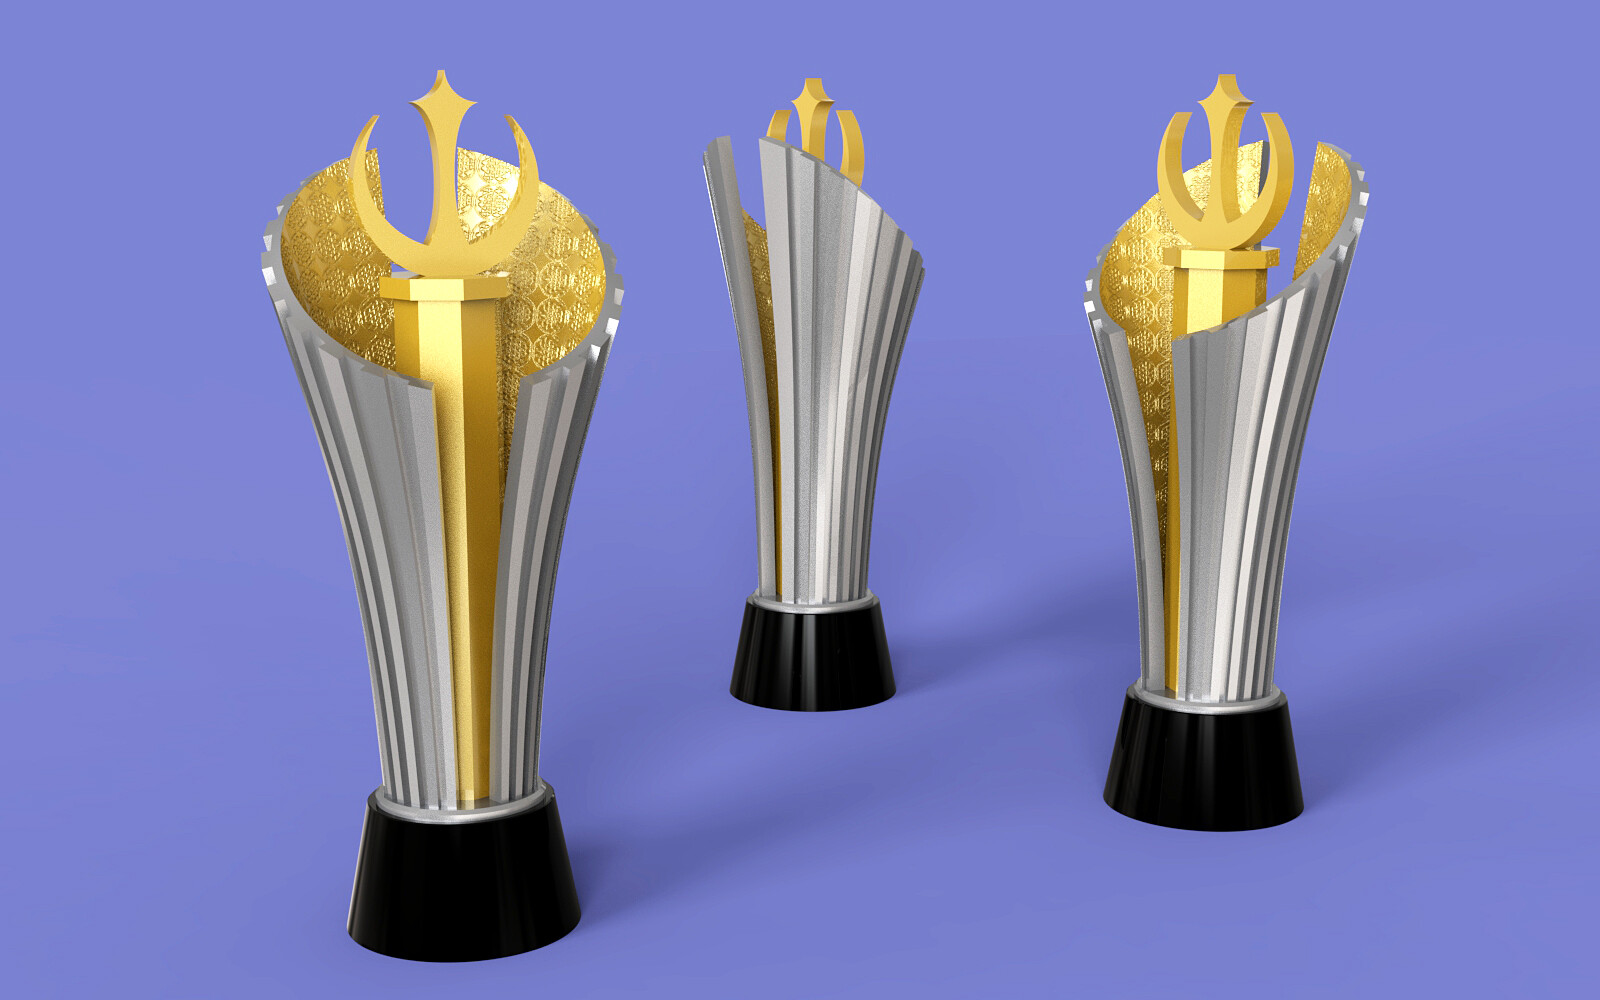 ArtStation - KNVB Beker 3D trophy for PES 2020/21